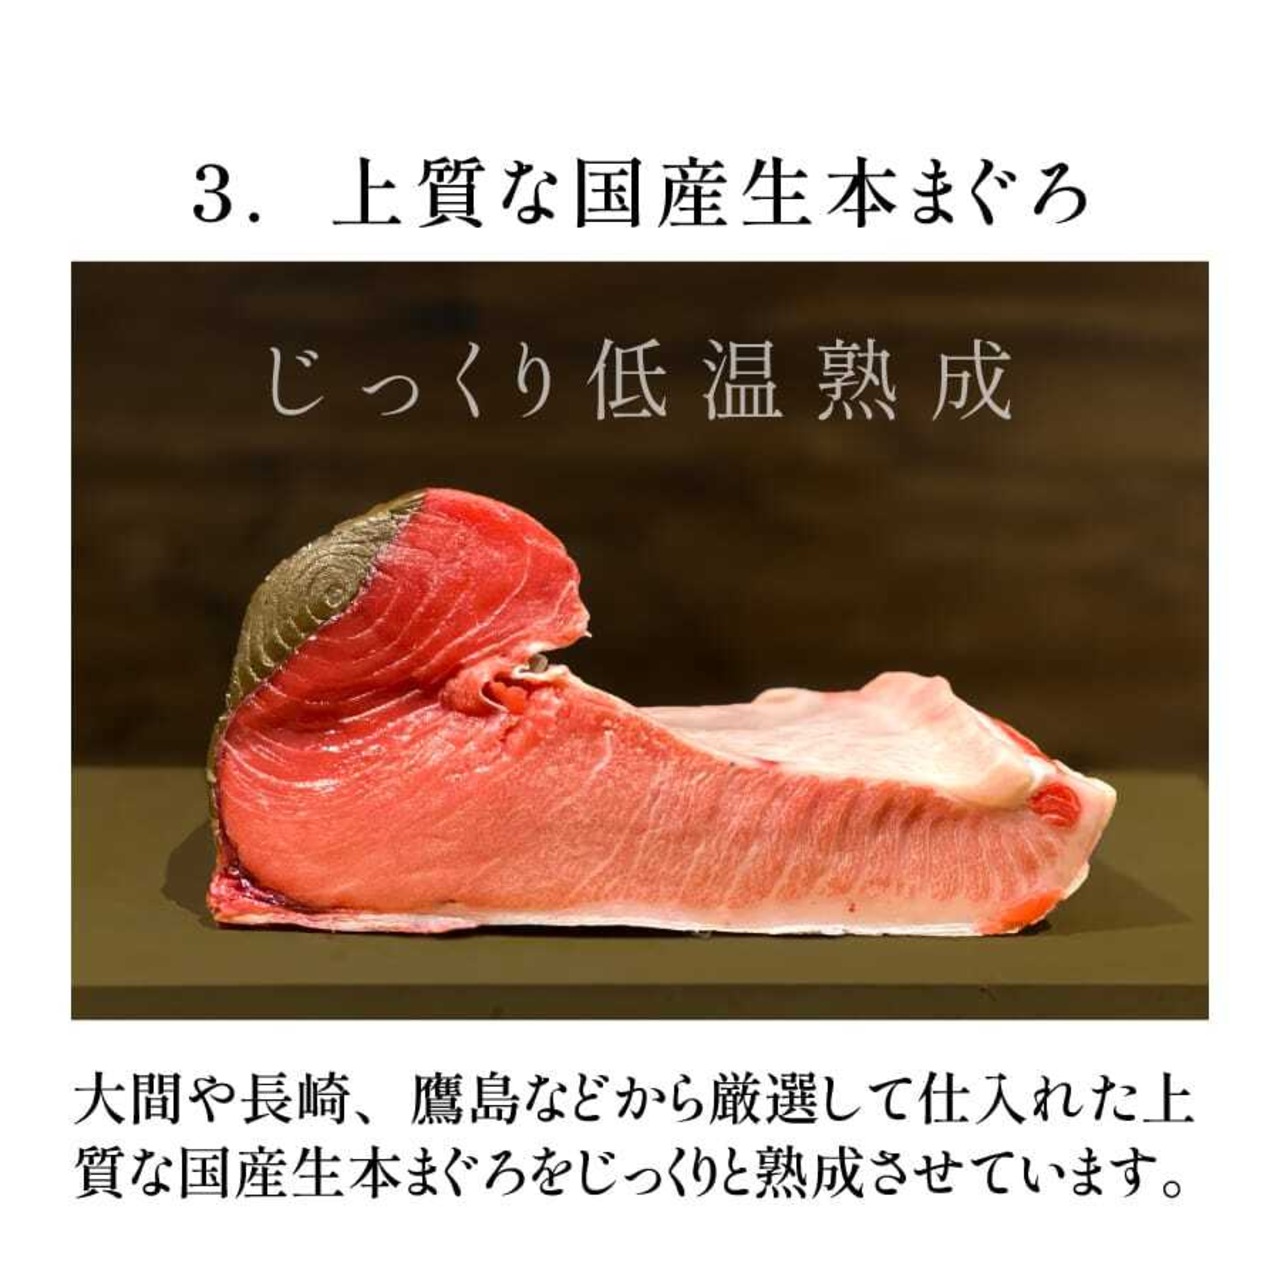 コトブキ海鮮丼 プラチナまぐろ大トロ 単品